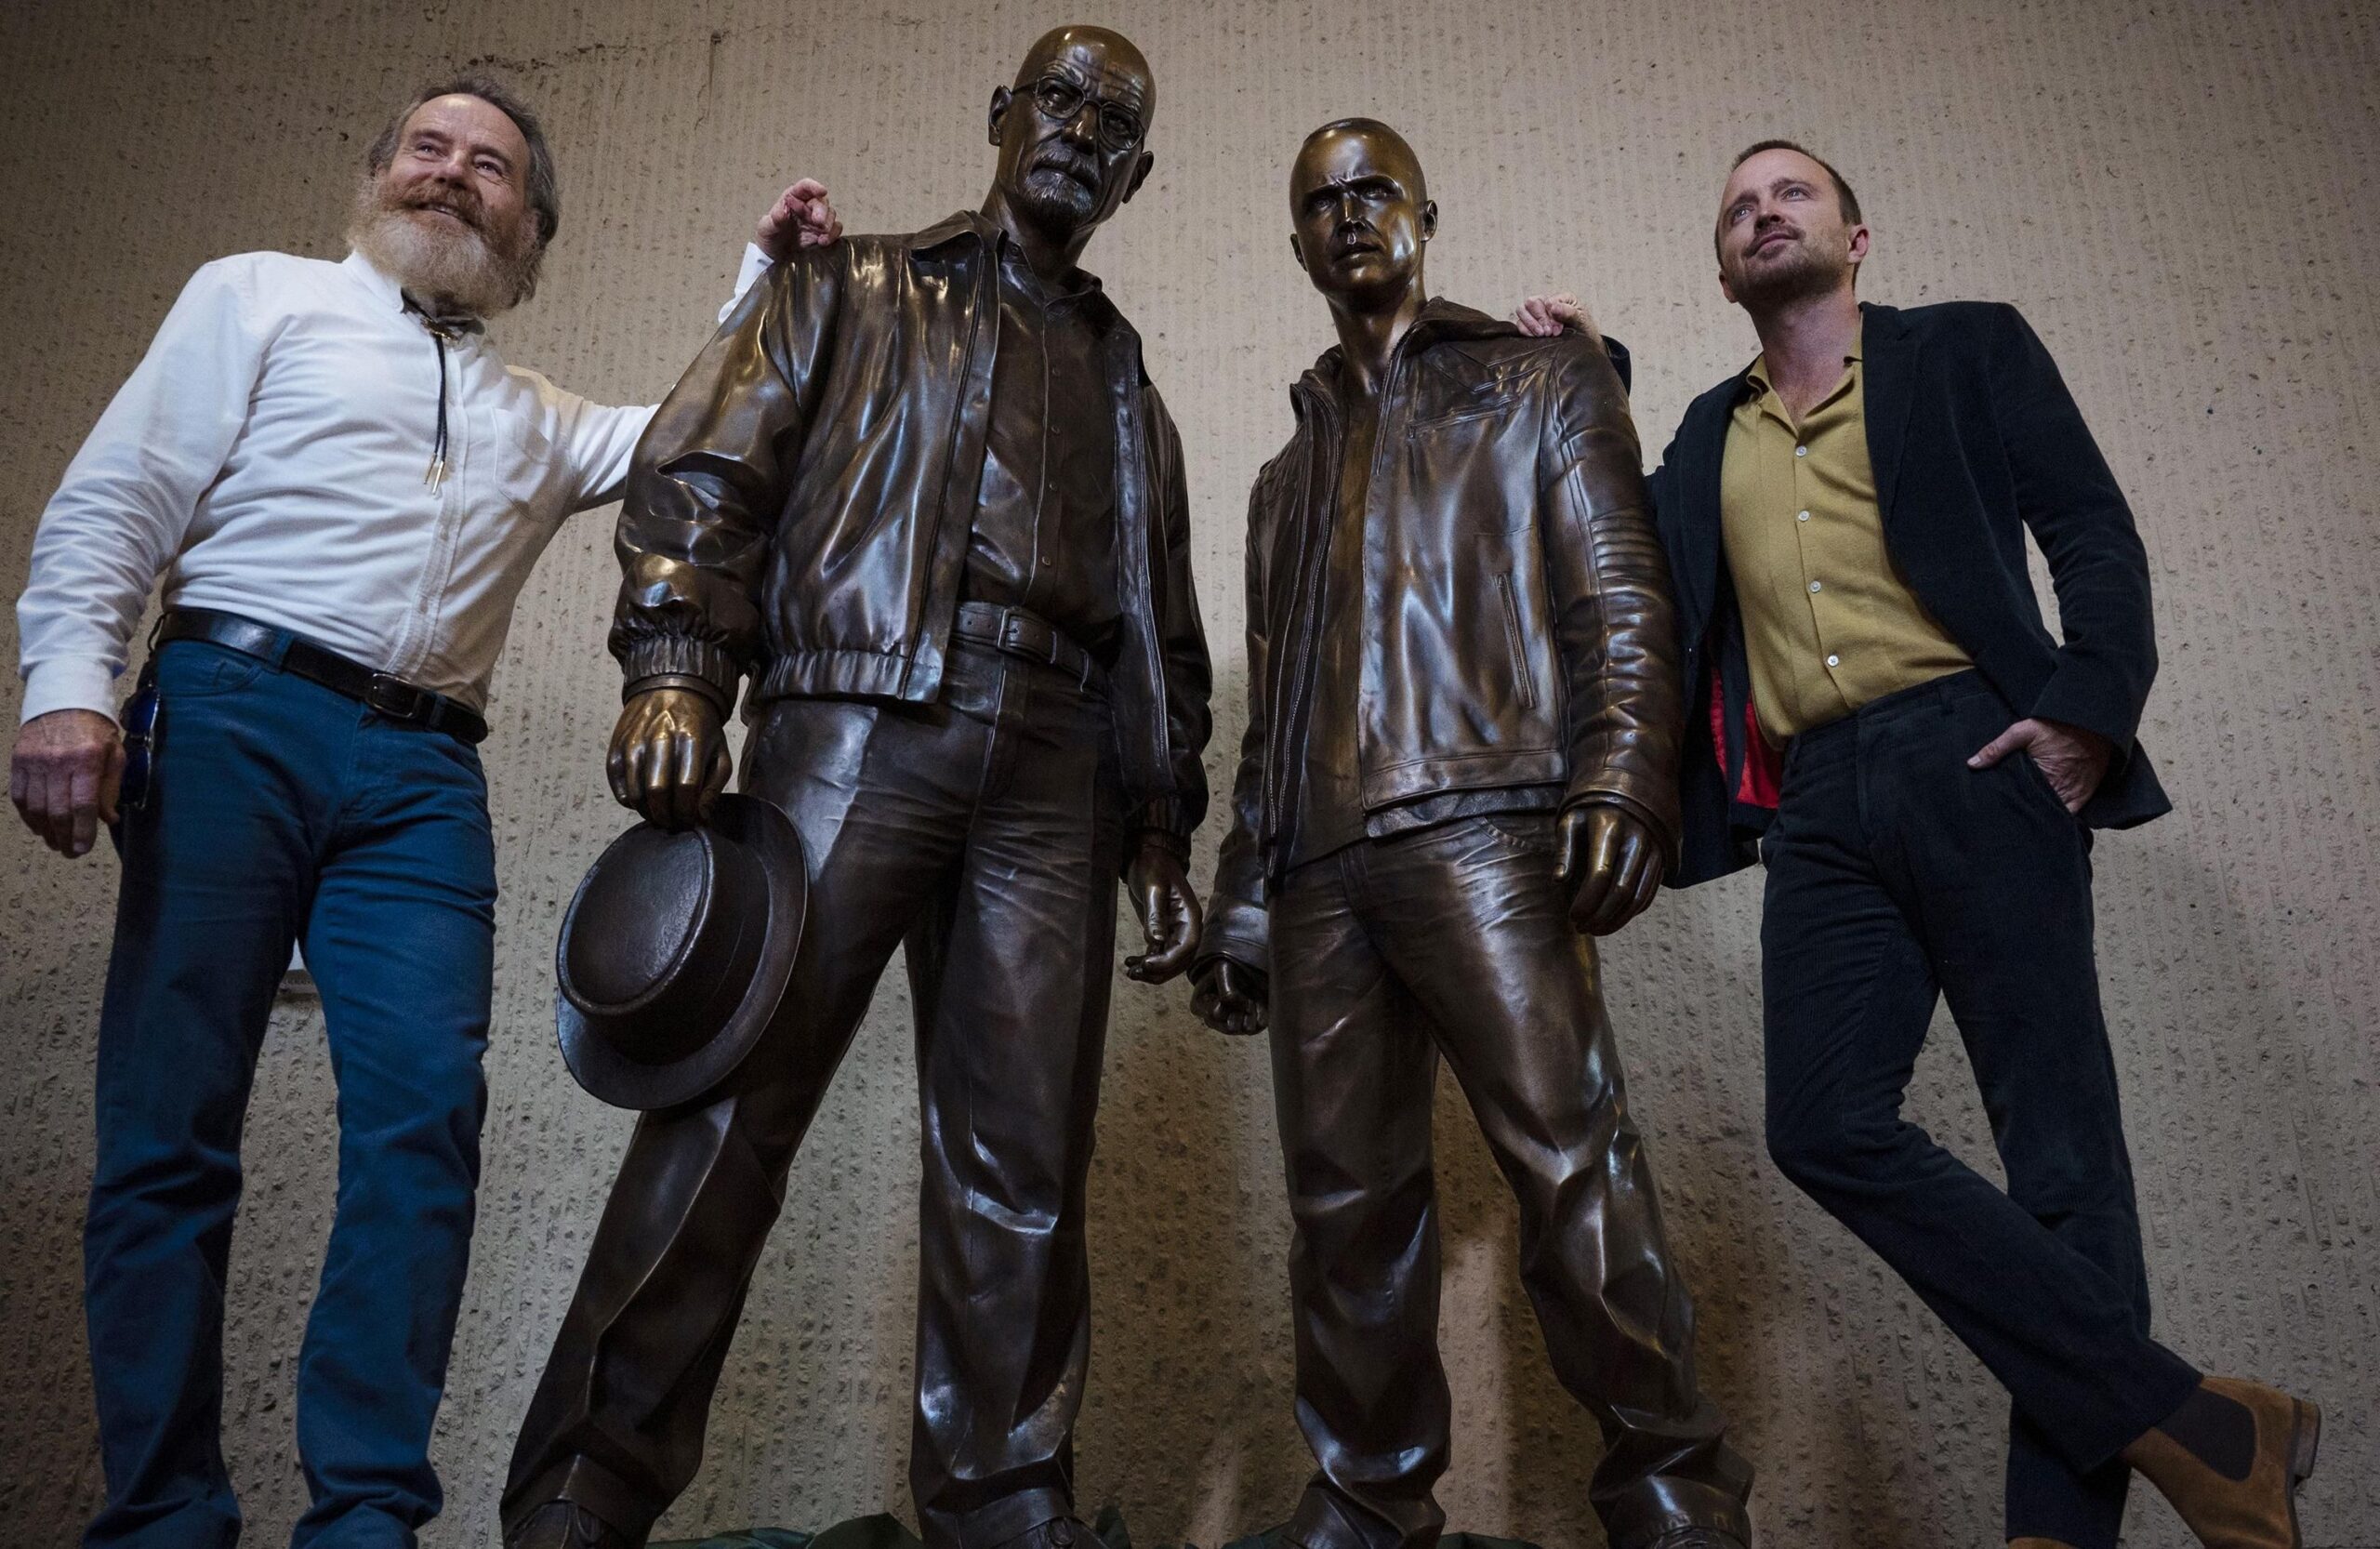 Breaking Bad : Comment faire pour voir les statues de Walter White et Jesse Pinkman ? Breaking Bad les statues de Walter White et Jesse Pinkman scaled